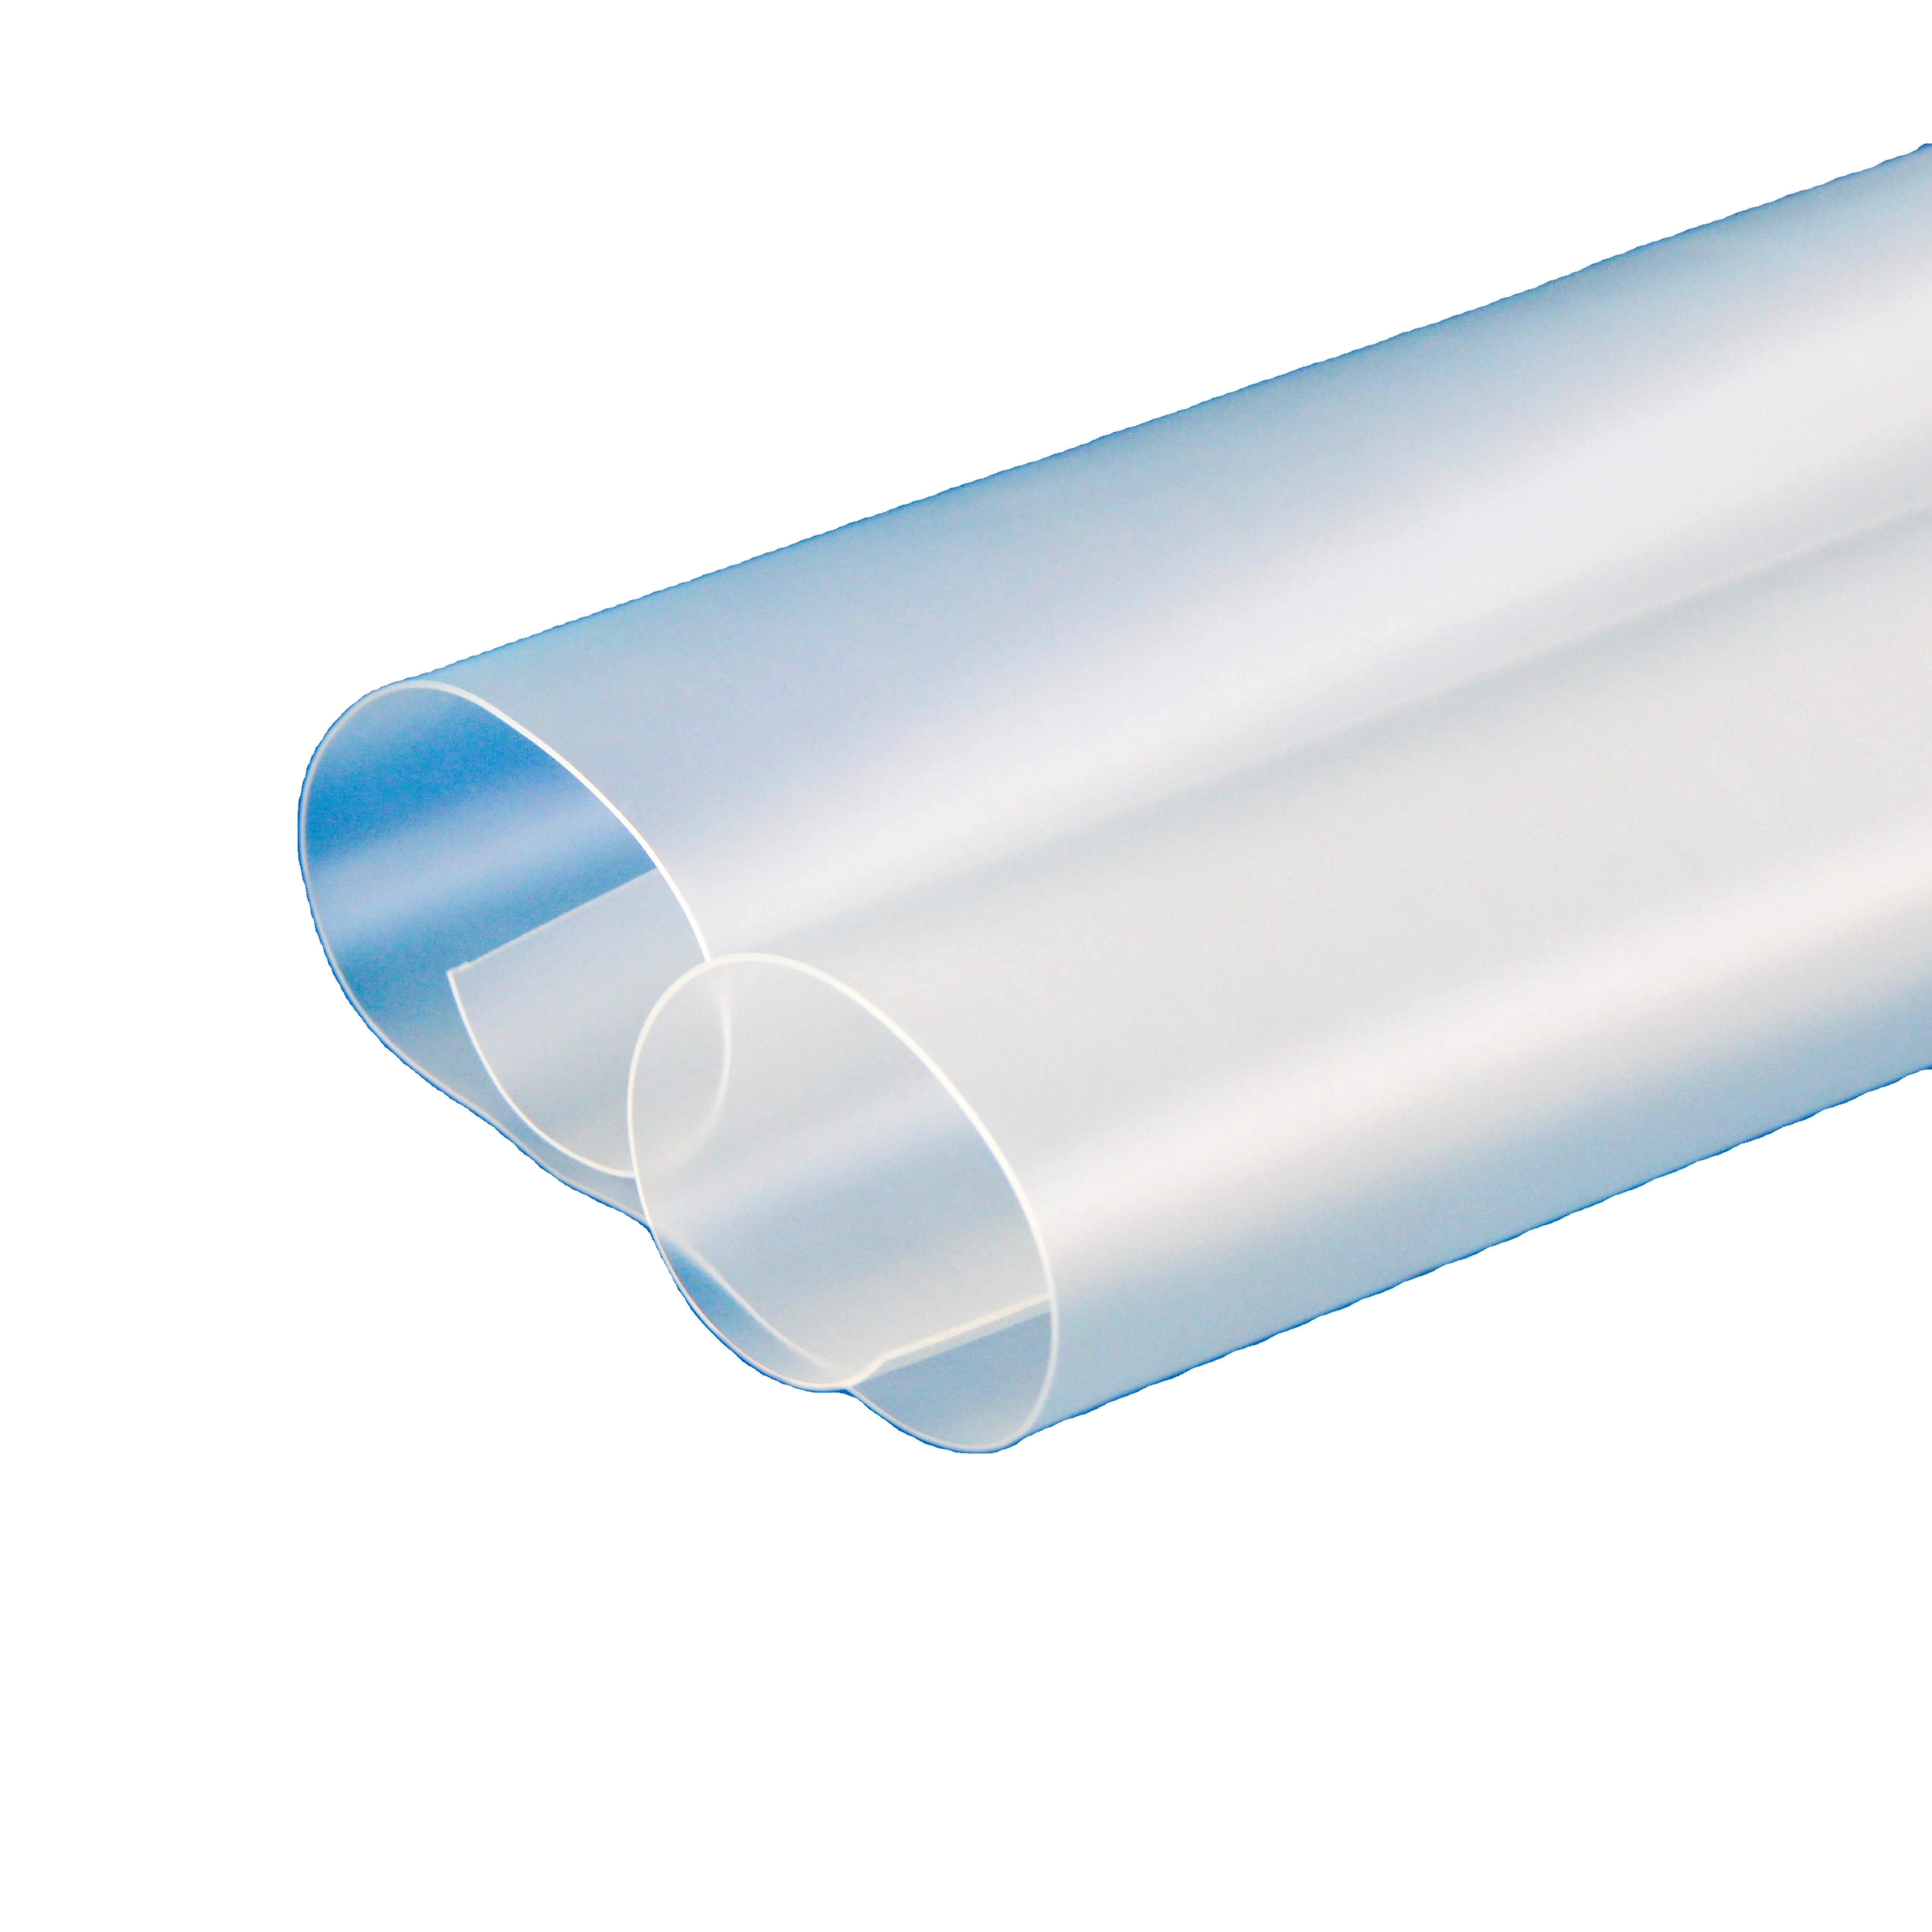 Sandite Werkslieferung für Windschutzscheiben kugelsicheres Glas auf Urethanbasis Elastomere thermoplastische Polyurethan-TPU-Bildplatte